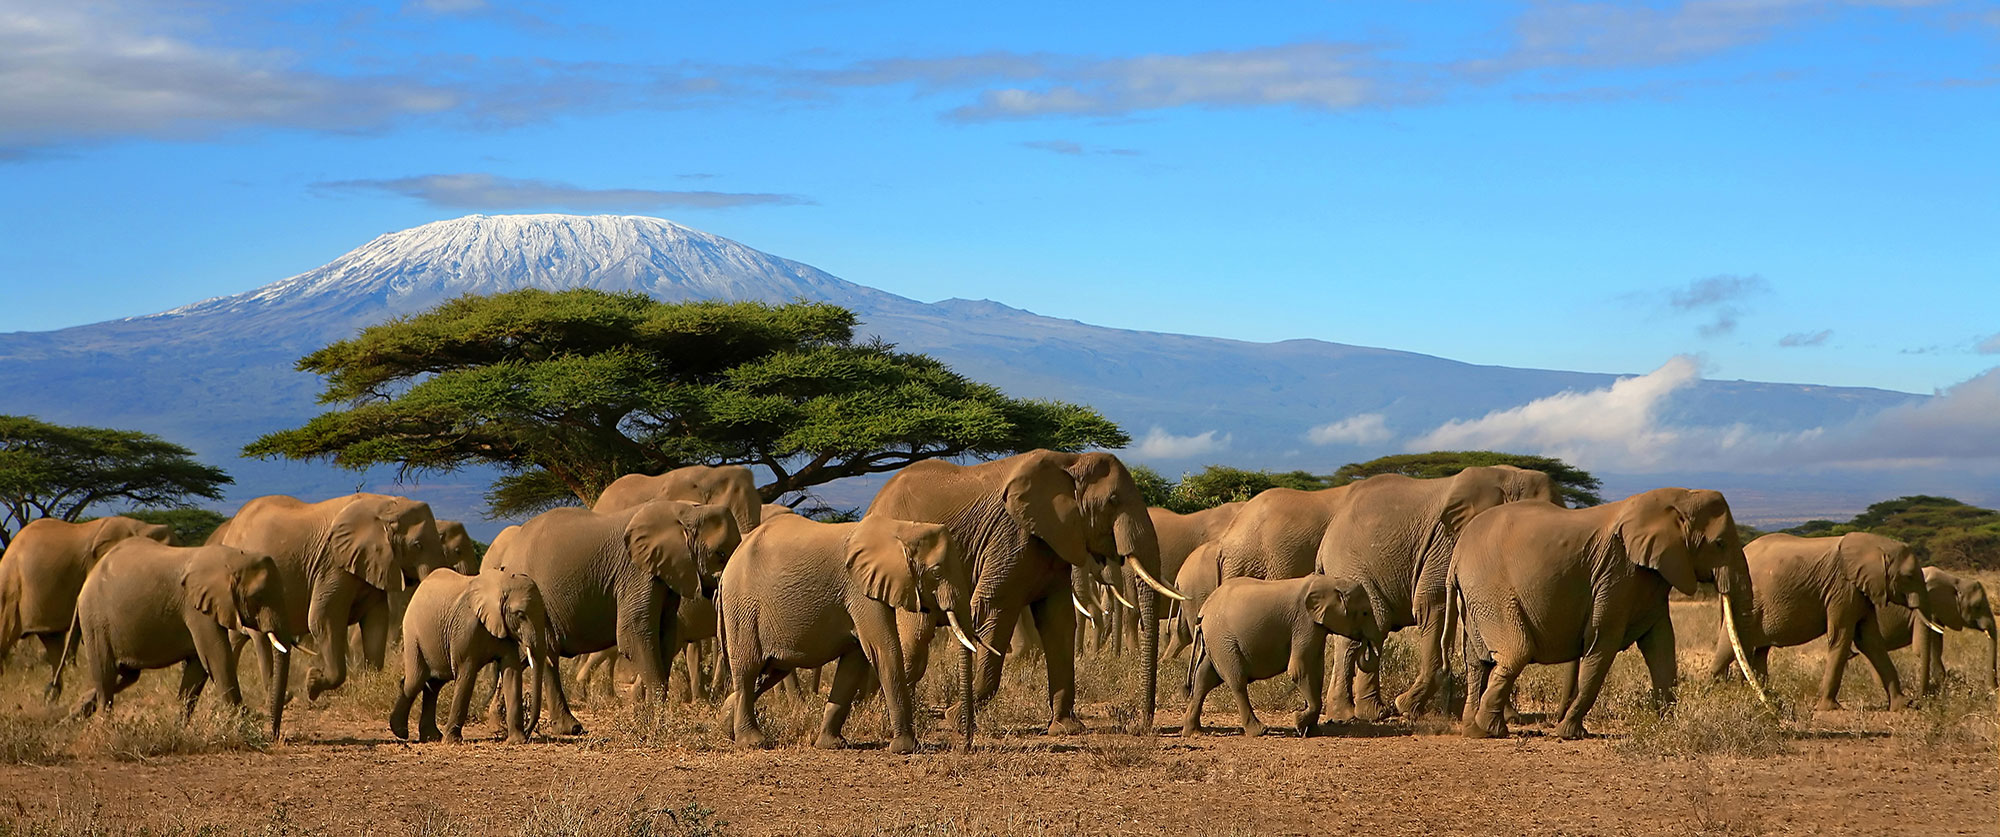 Western Tanzania - Tanzania - Safari